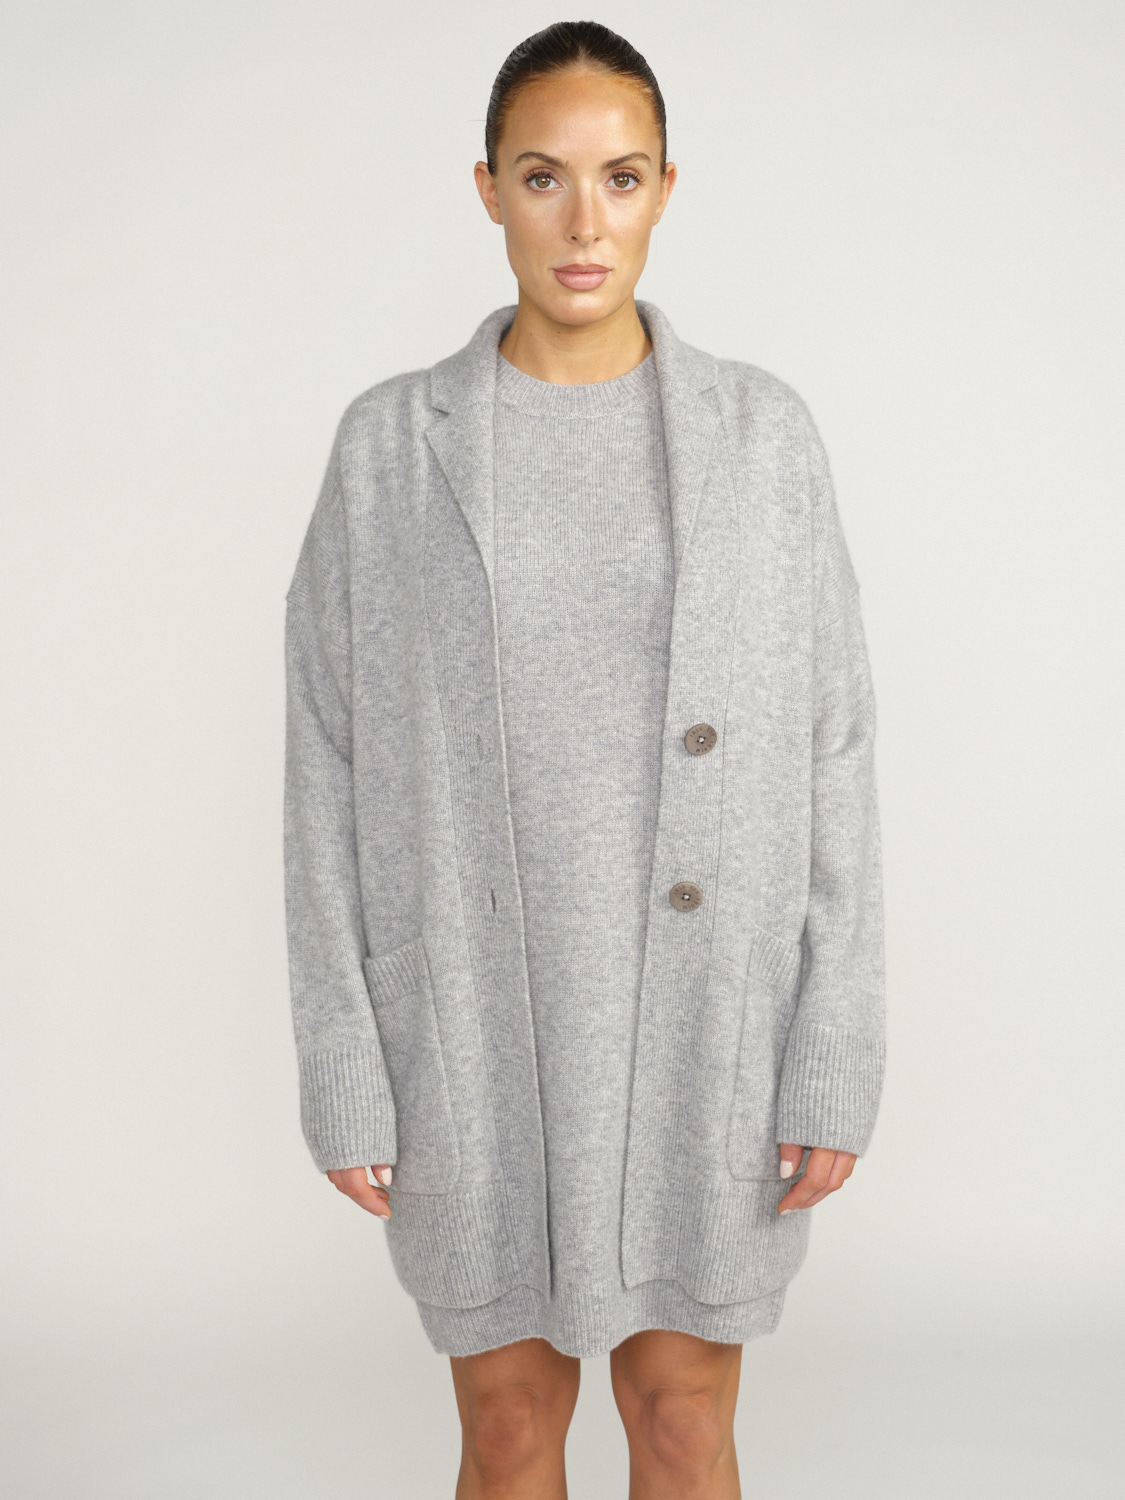 Iris von Arnim Betina - Cardigan with button placket in cashmere and silk grey XS/S